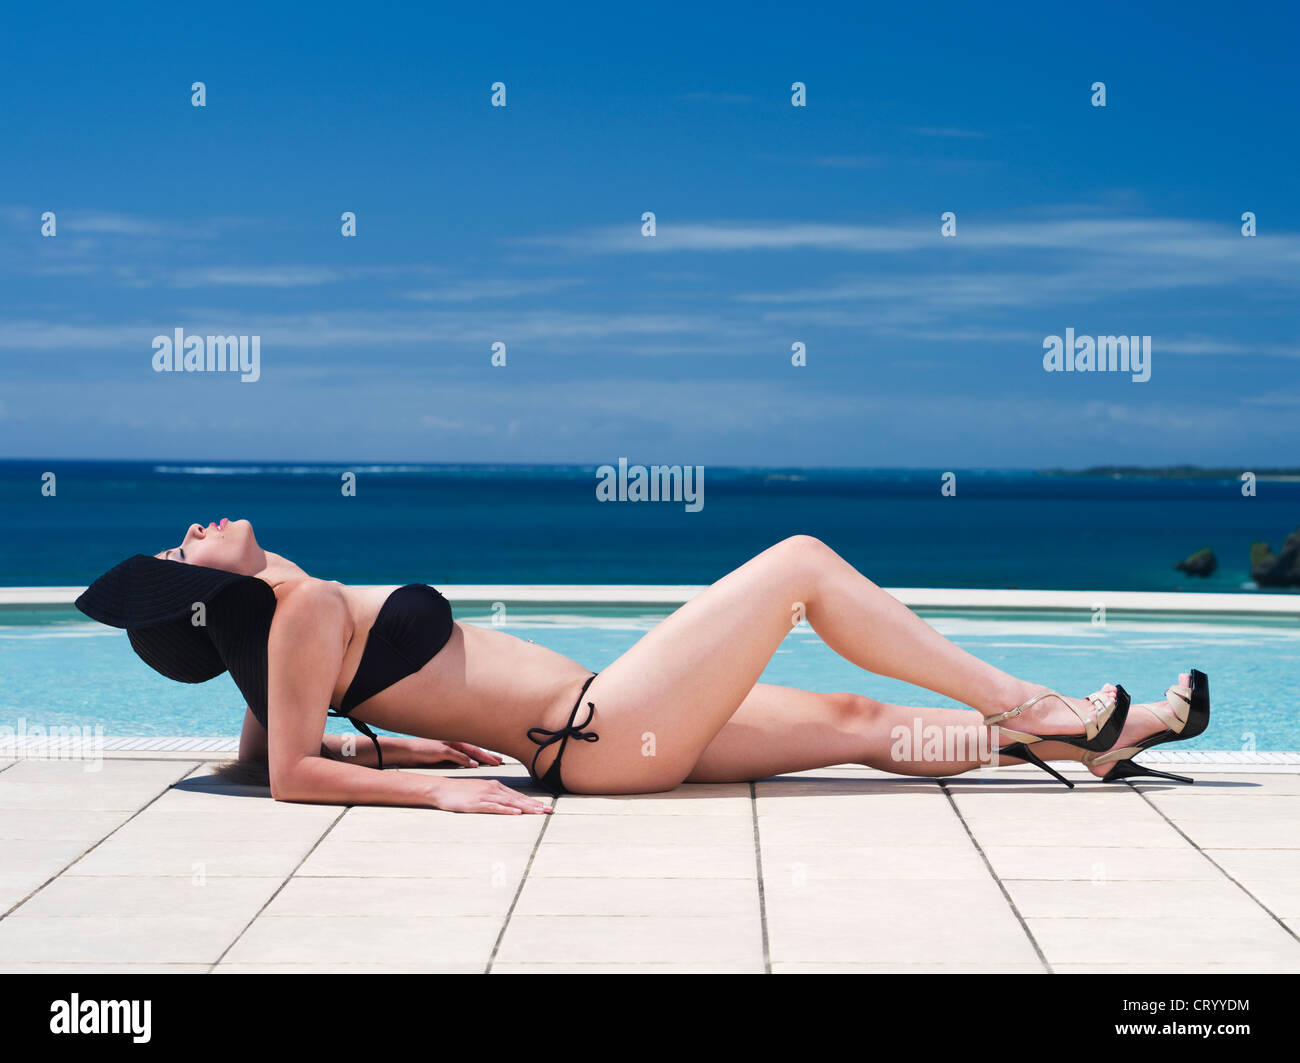 Beautiful Brazilian woman by the pool in bikini, high heels and sun hat. Stock Photo